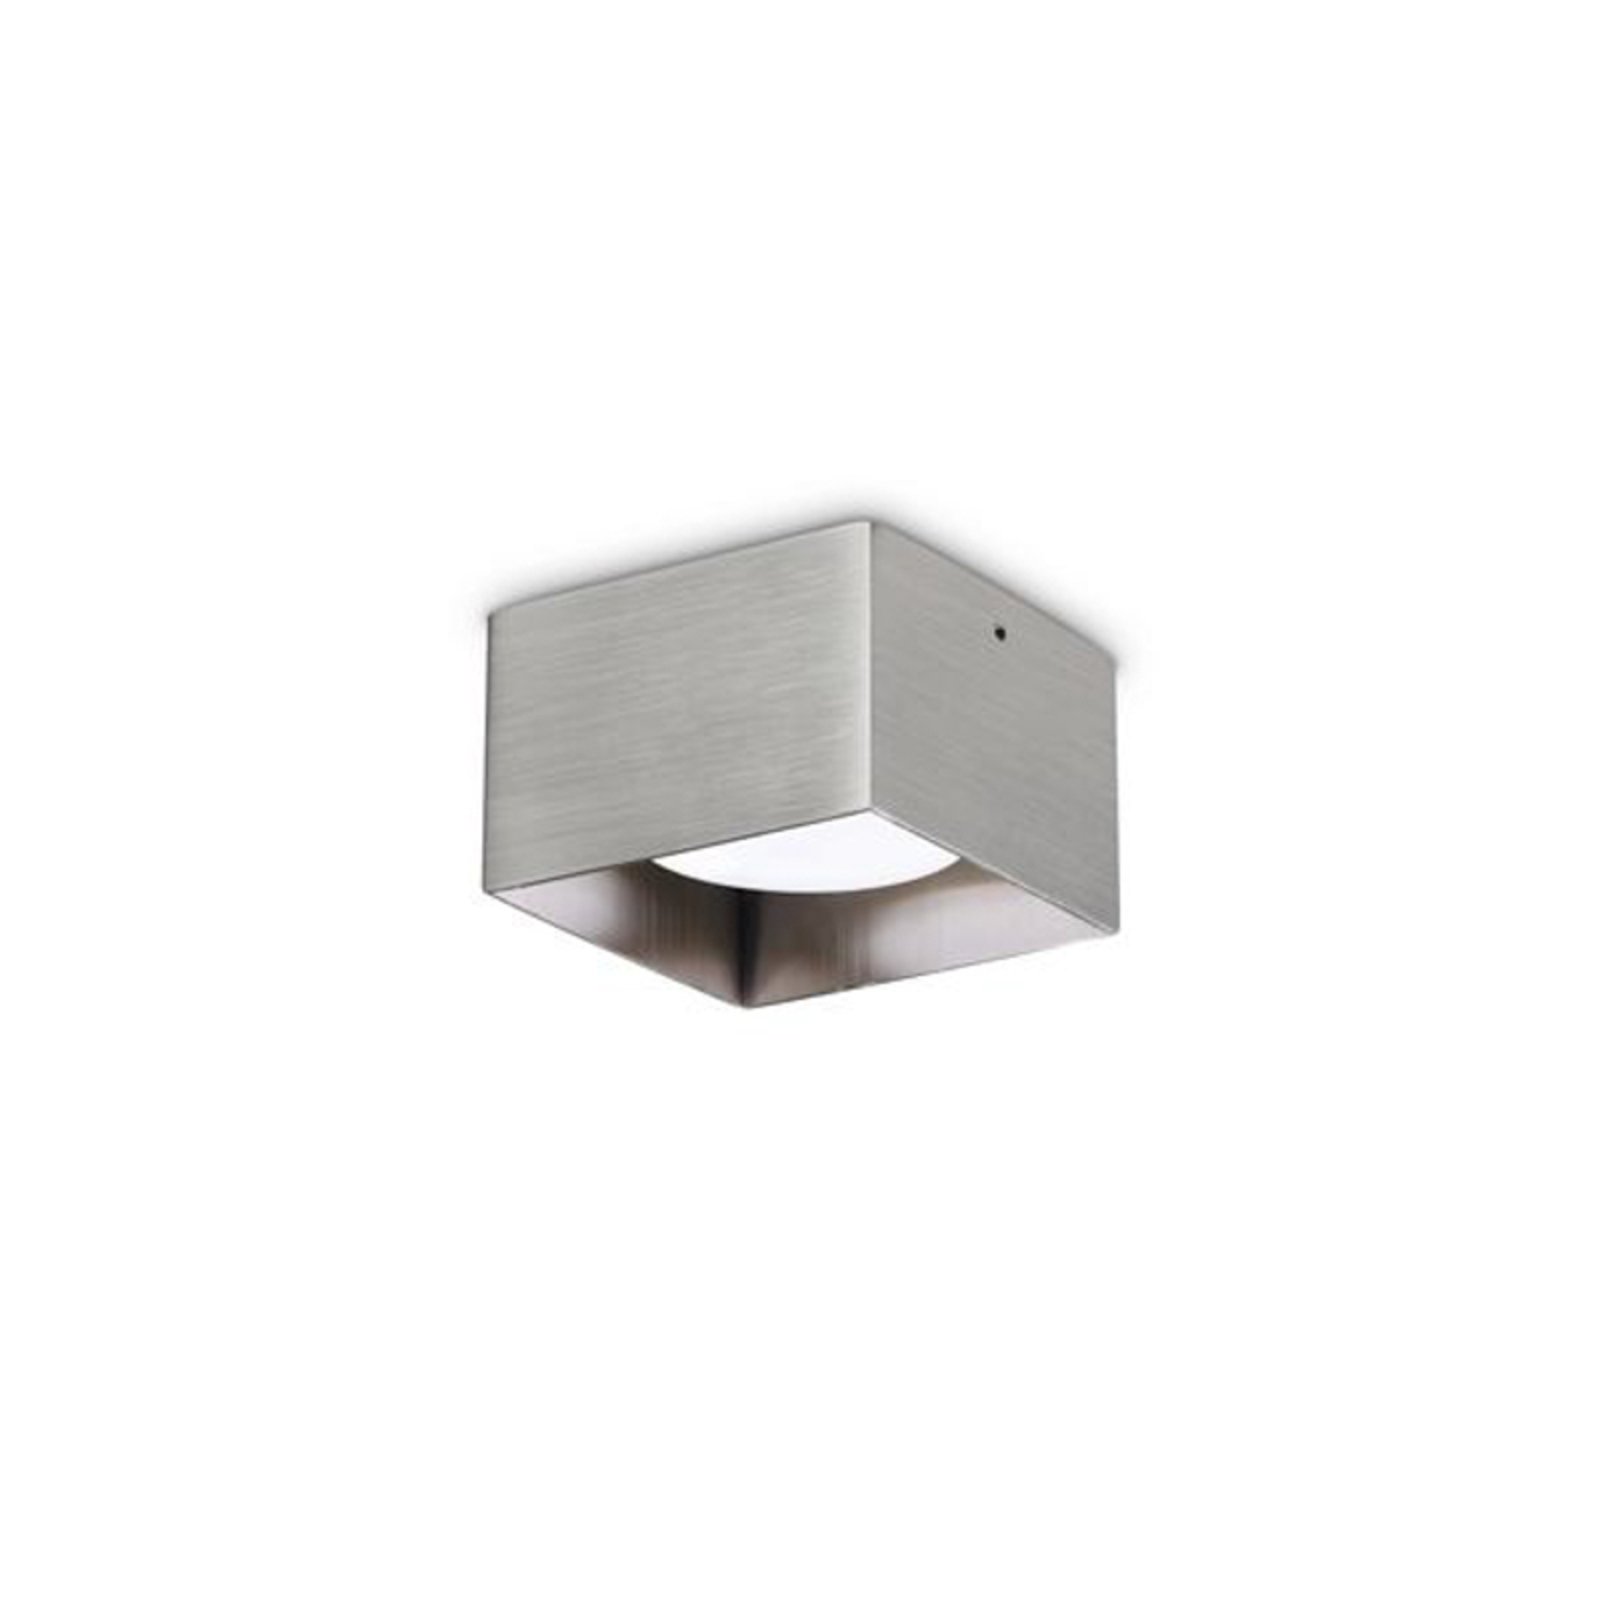 Ideal Lux downlight Spike Square, nikkelkleurig, aluminium, 10x10cm